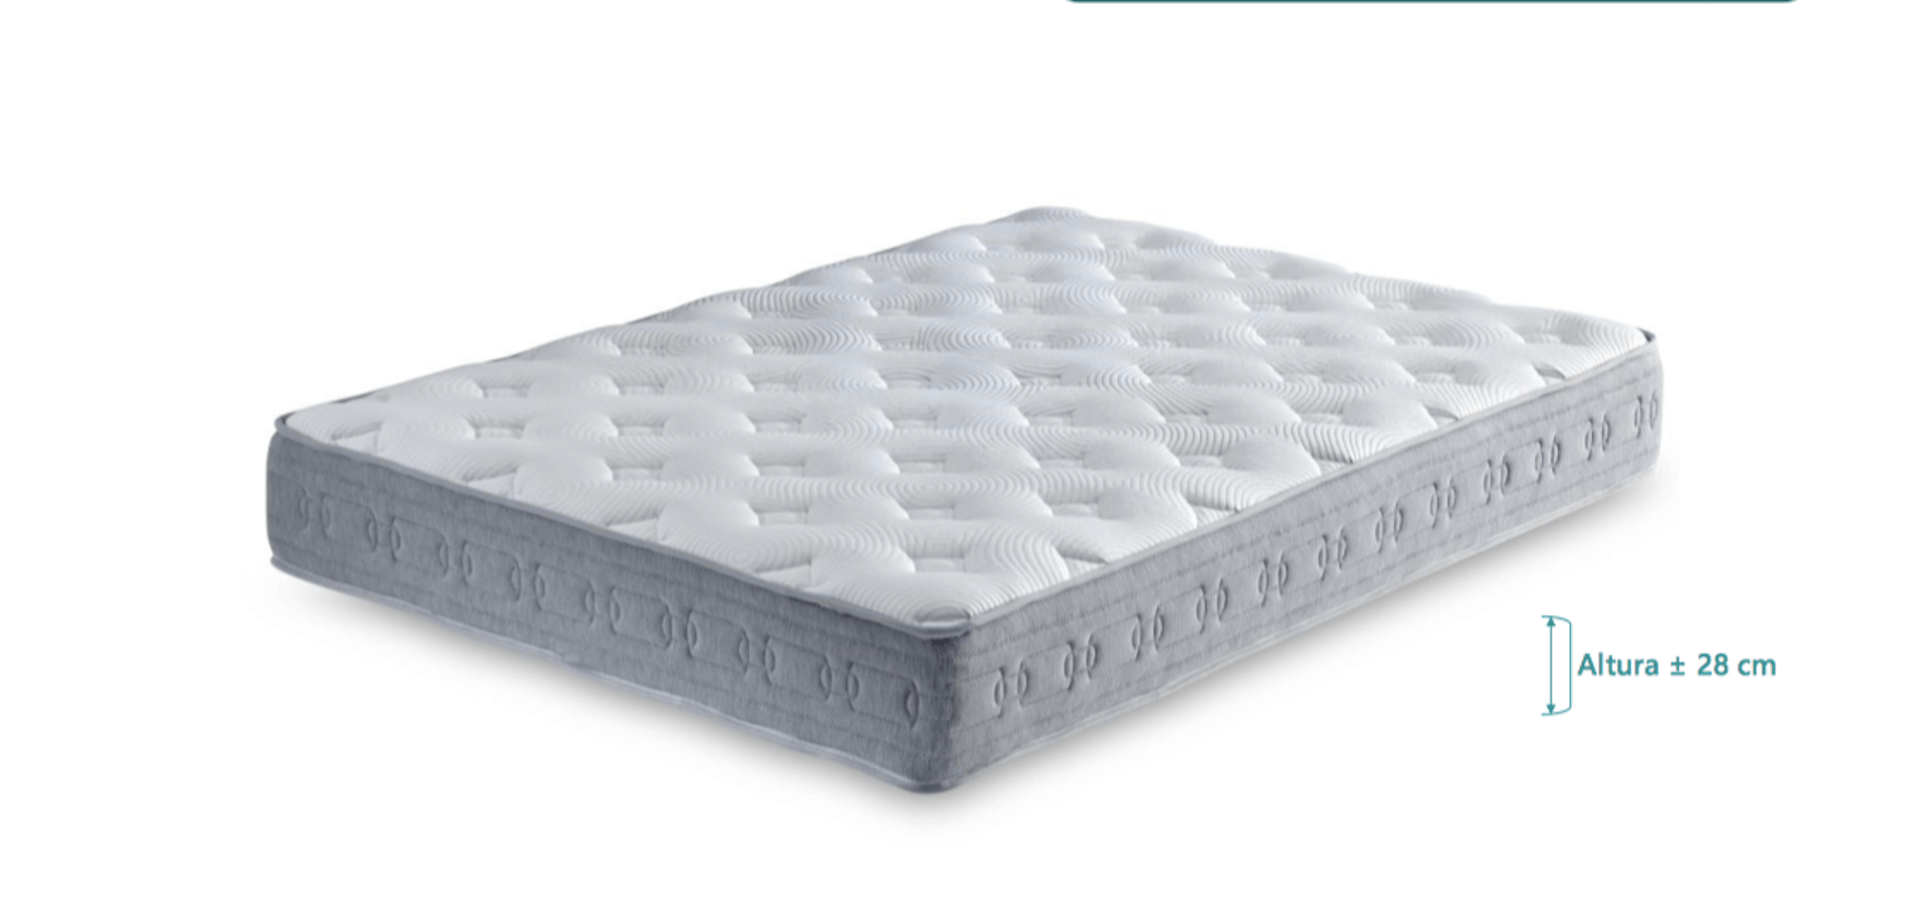 harrison amber 6700 mattress review